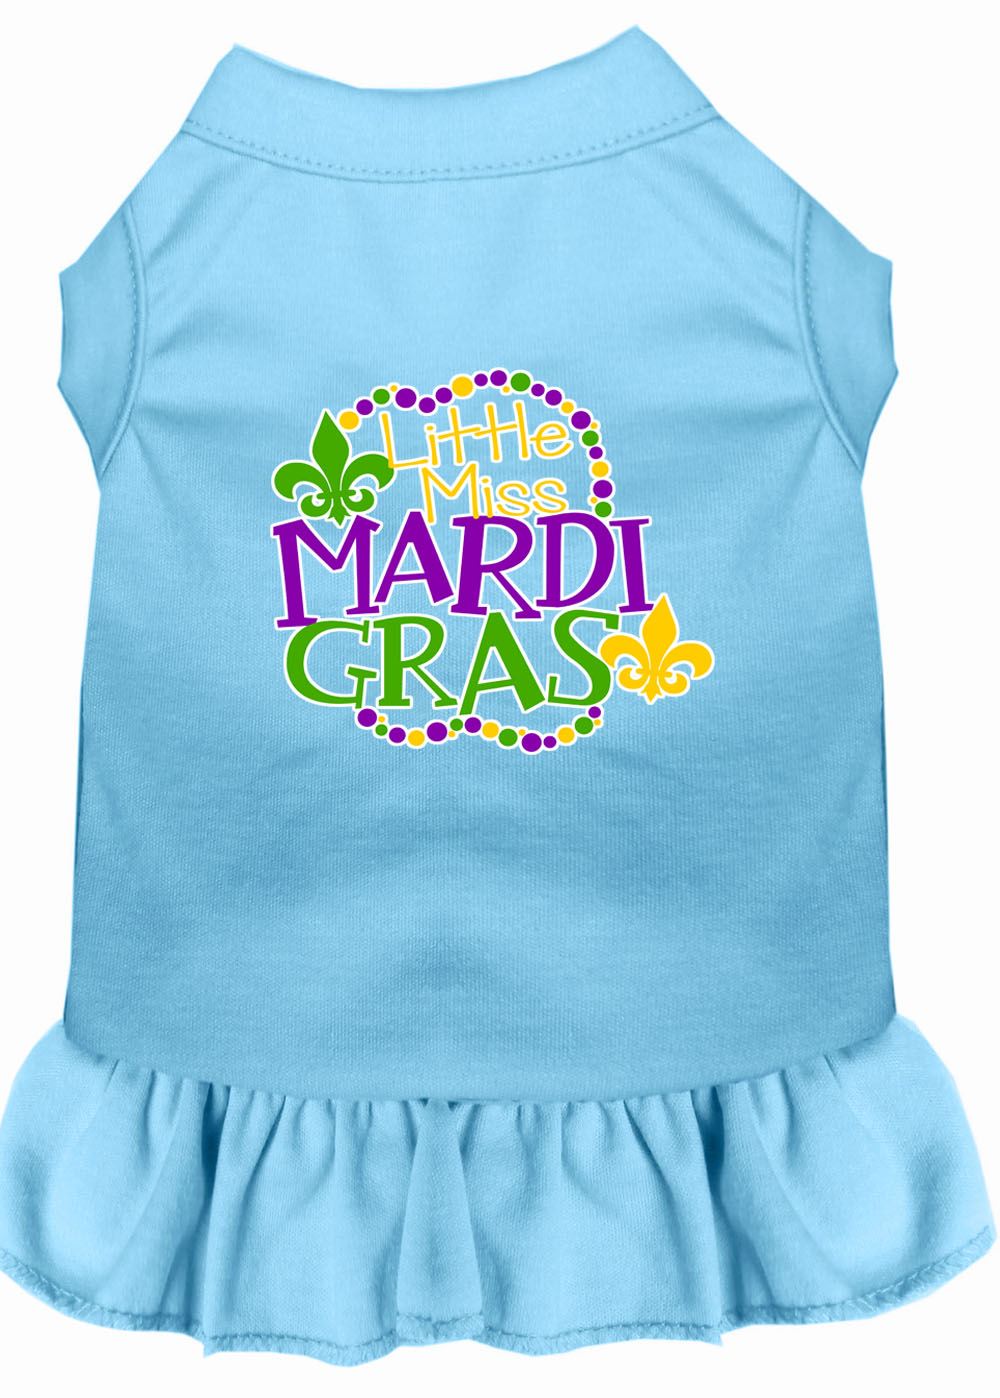 Miss Mardi Gras Screen Print Mardi Gras Dog Dress Baby Blue XXL